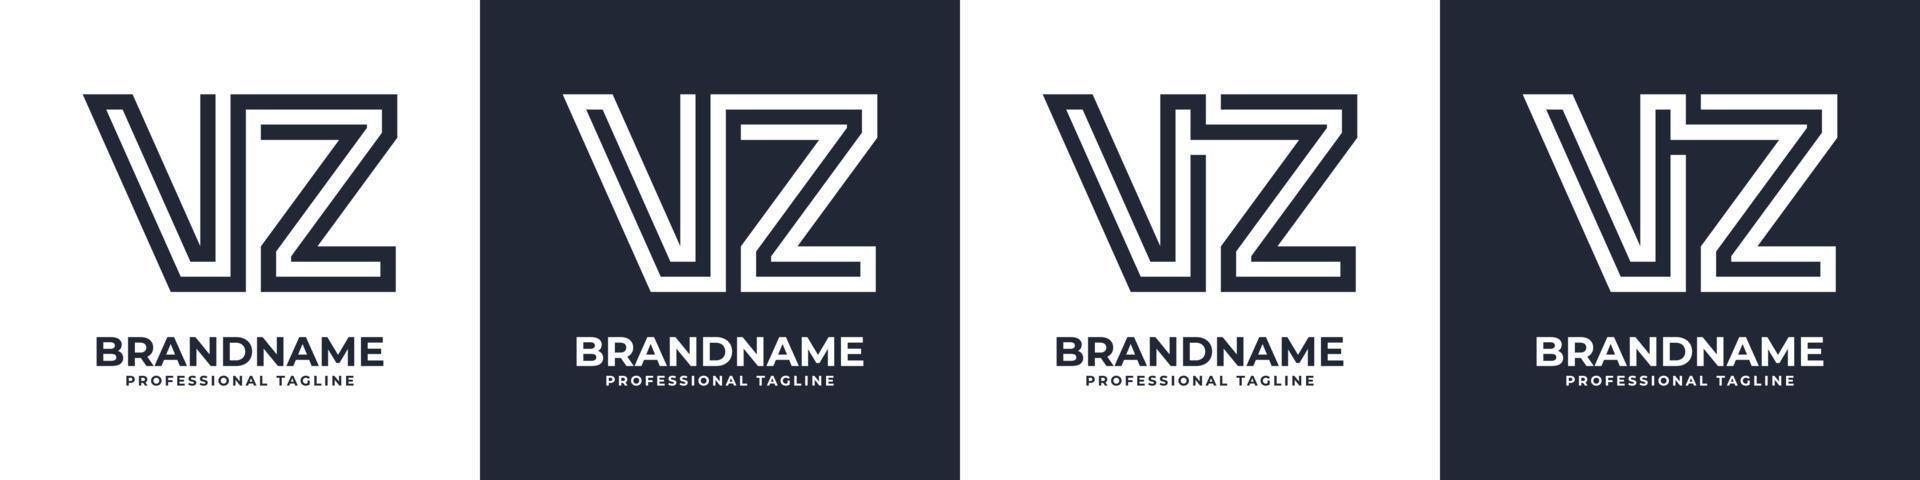 enkel vz monogram logotyp, lämplig för några företag med vz eller zv första. vektor